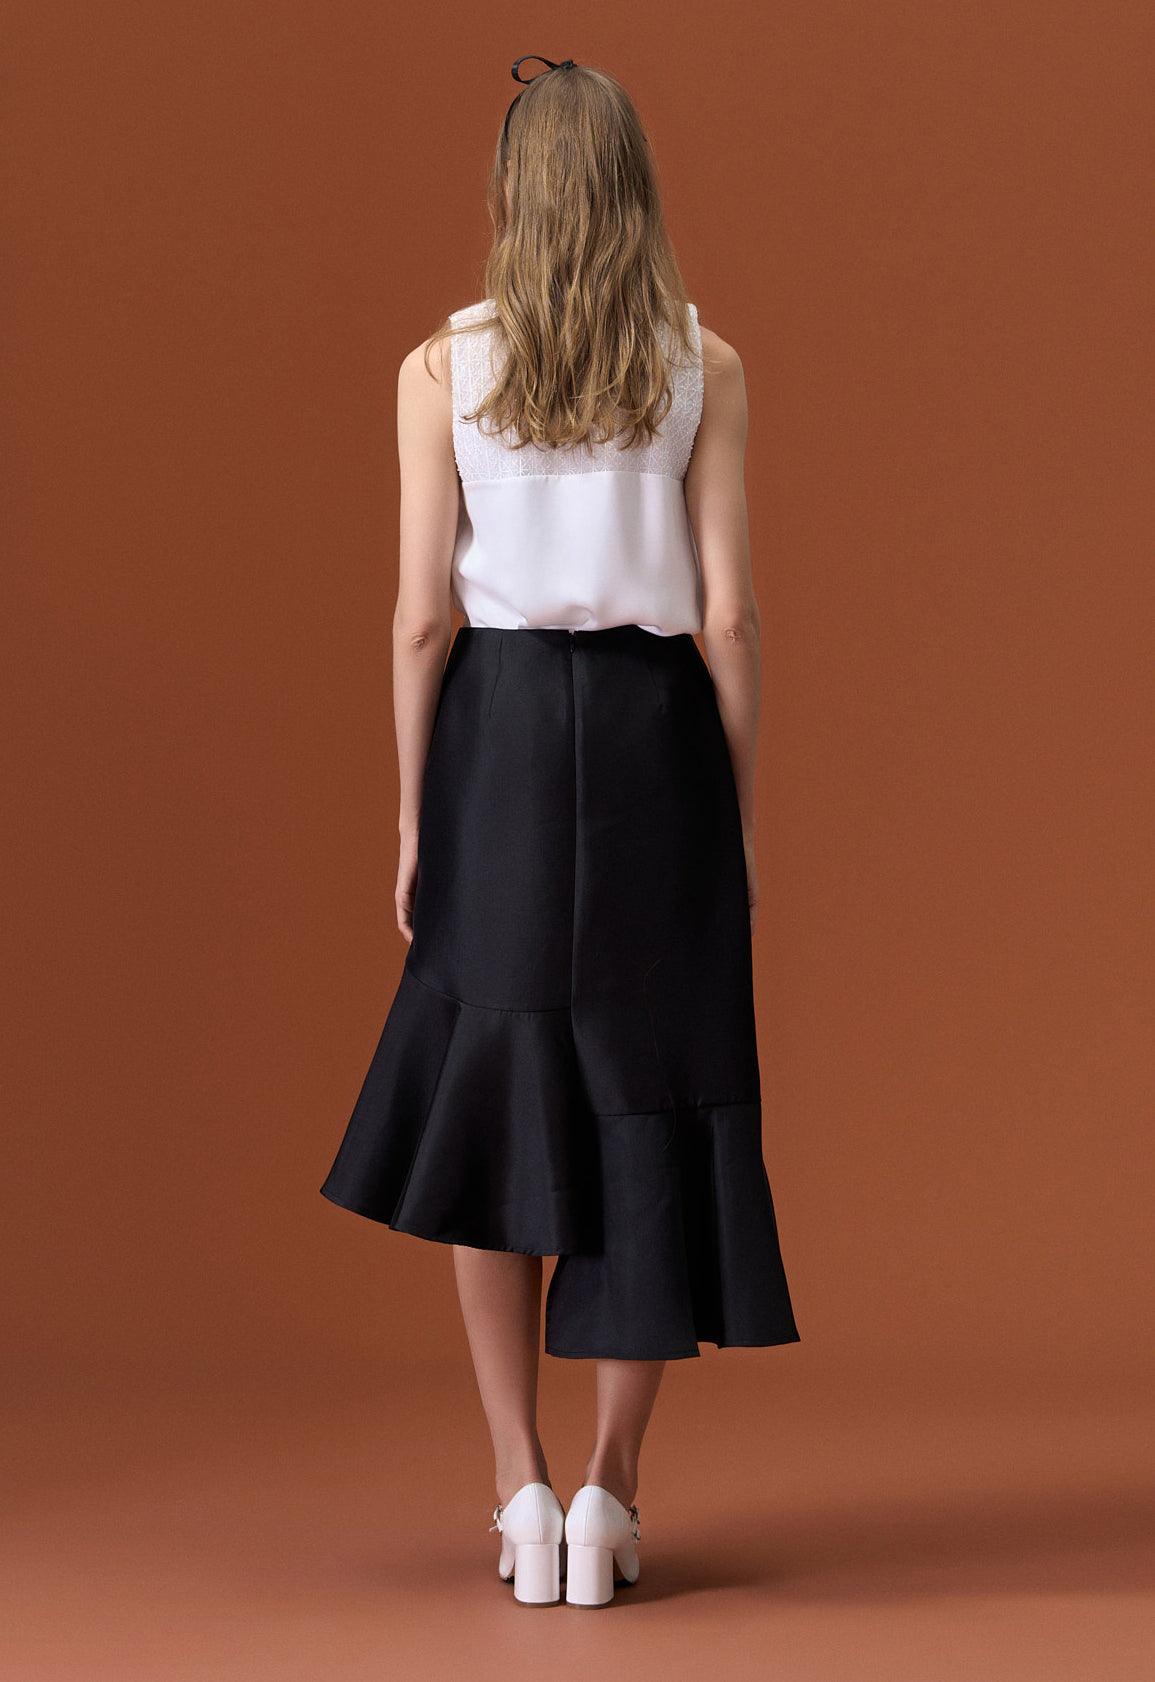 Asymmetrical Black Satin Skirt - MOISELLE